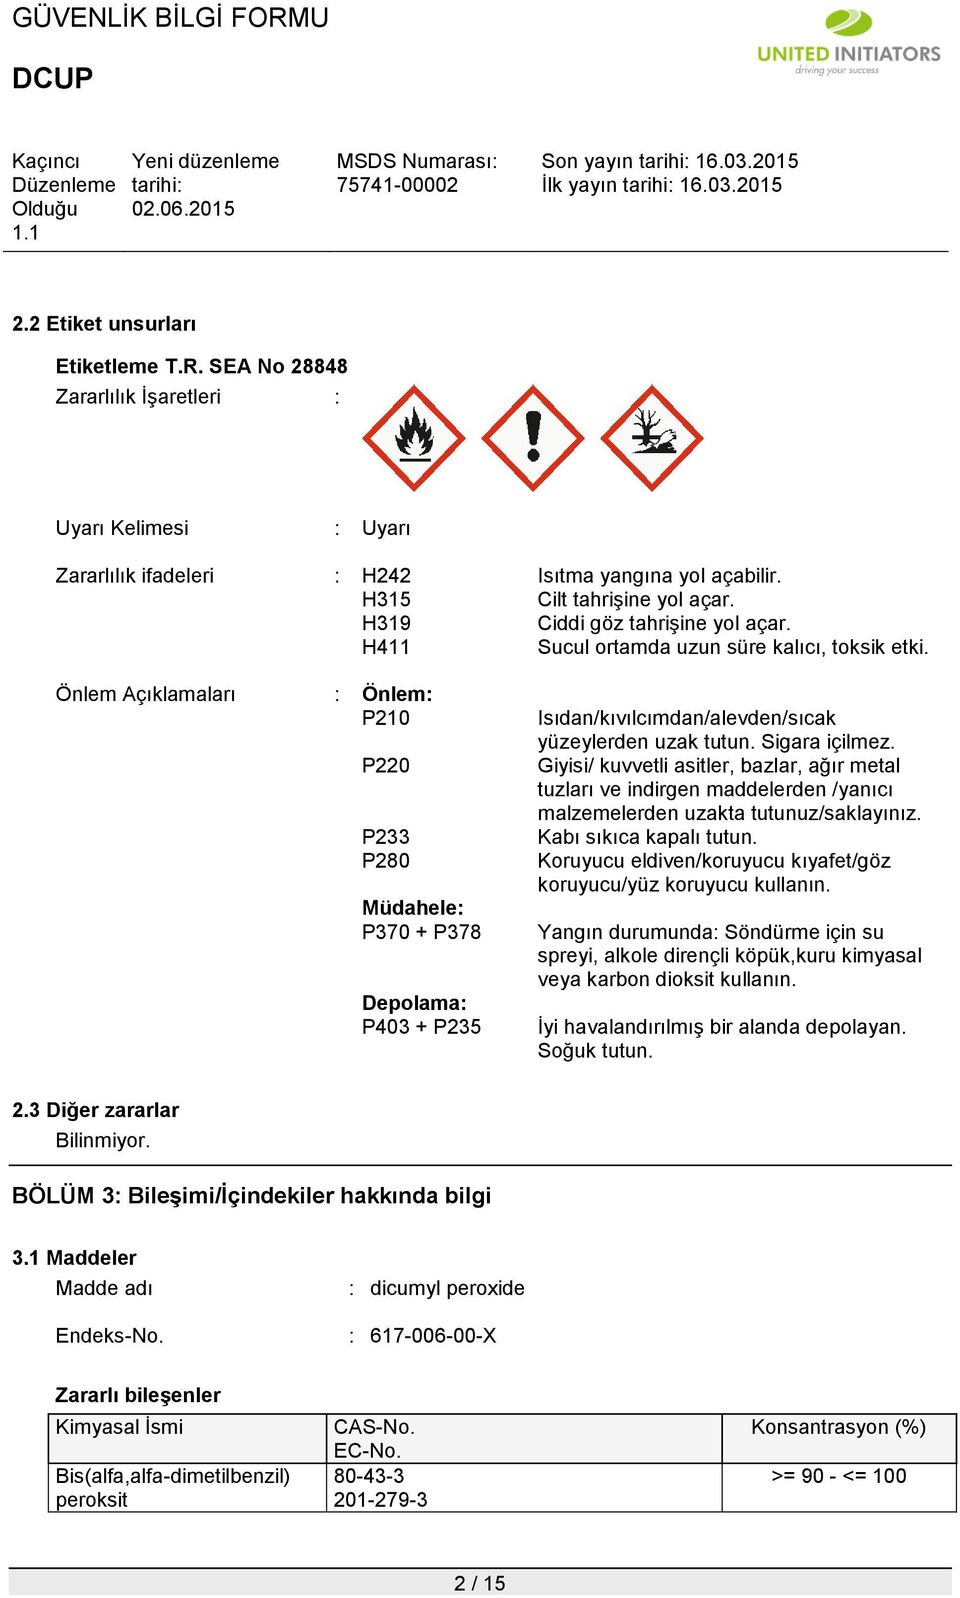 Önlem Açıklamaları : Önlem: P210 P220 P233 P280 Müdahele: P370 + P378 Depolama: P403 + P235 Isıdan/kıvılcımdan/alevden/sıcak yüzeylerden uzak tutun. Sigara içilmez.